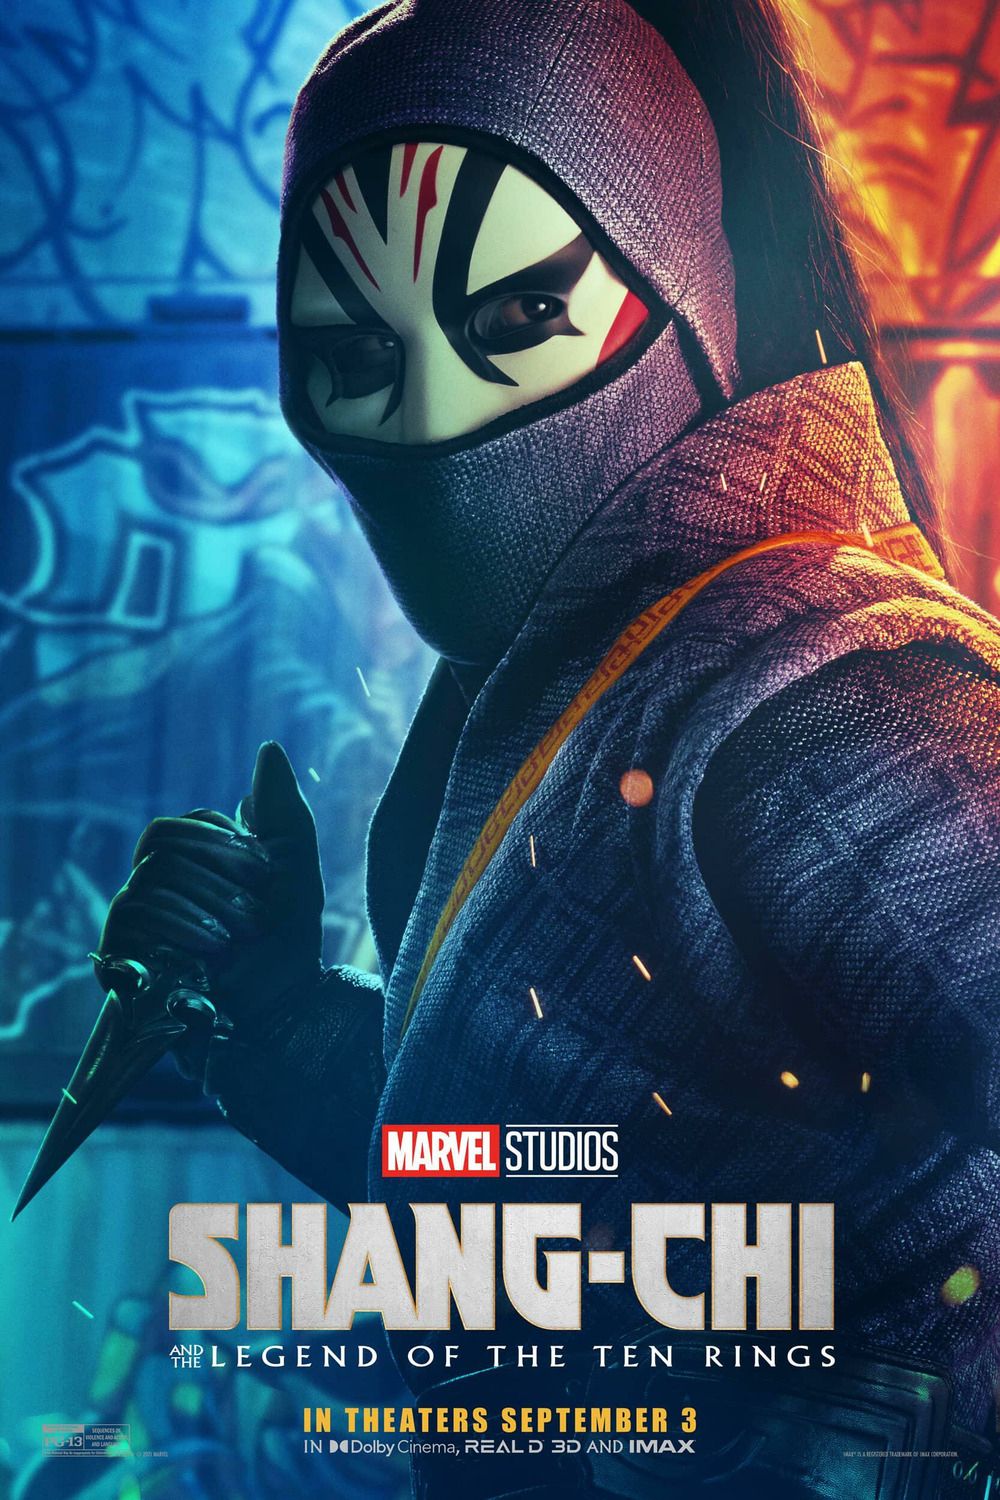 Shang Chi Character Poster Image #6